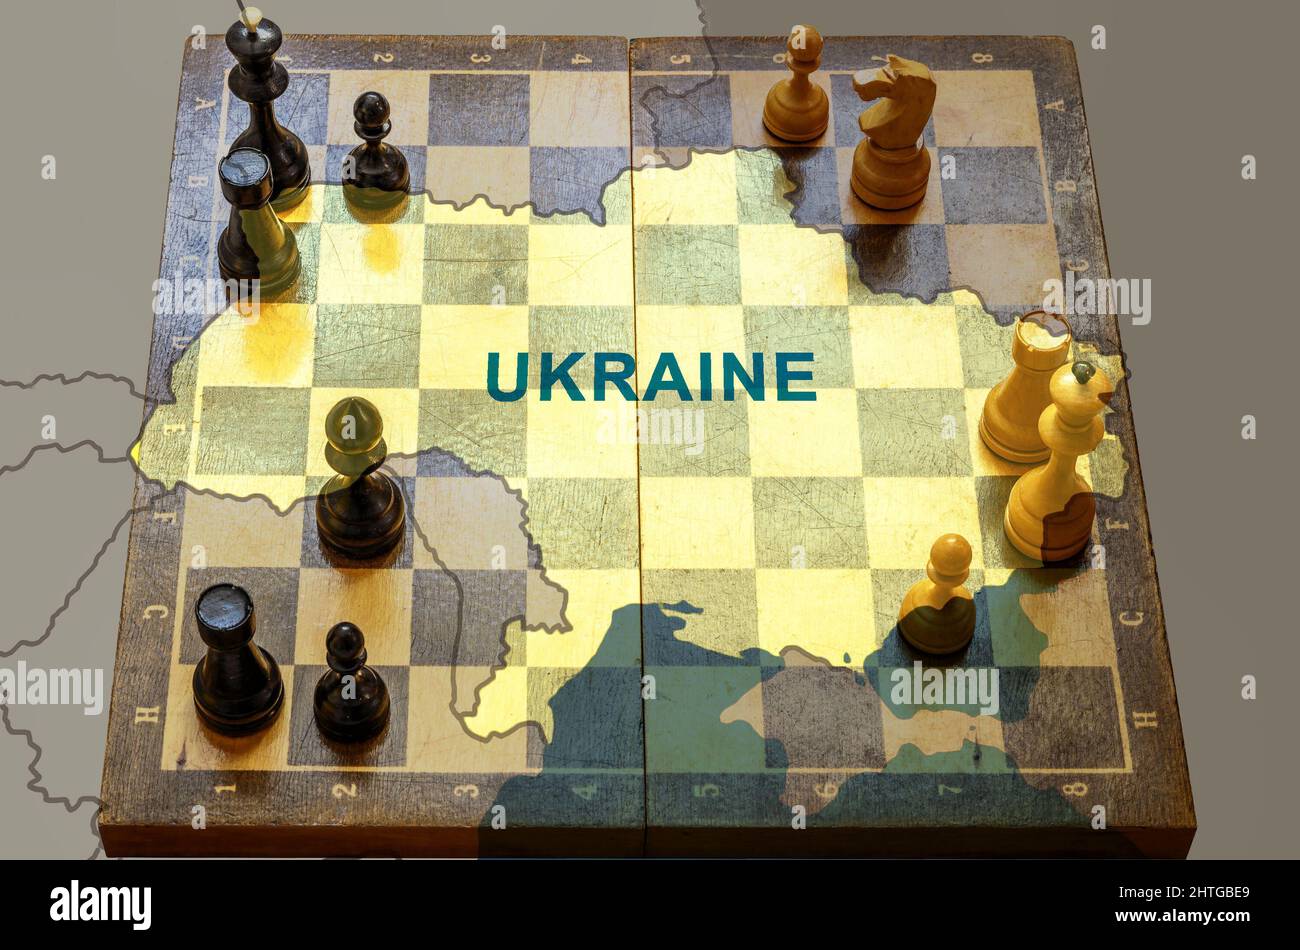 Guerra in Ucraina, scacchi come gioco geopolitico tra Russia, UE e Stati Uniti. Mappa Ucraina sulla scacchiera. Concetto di tensione politica, guerra, crisi, conflitto Foto Stock